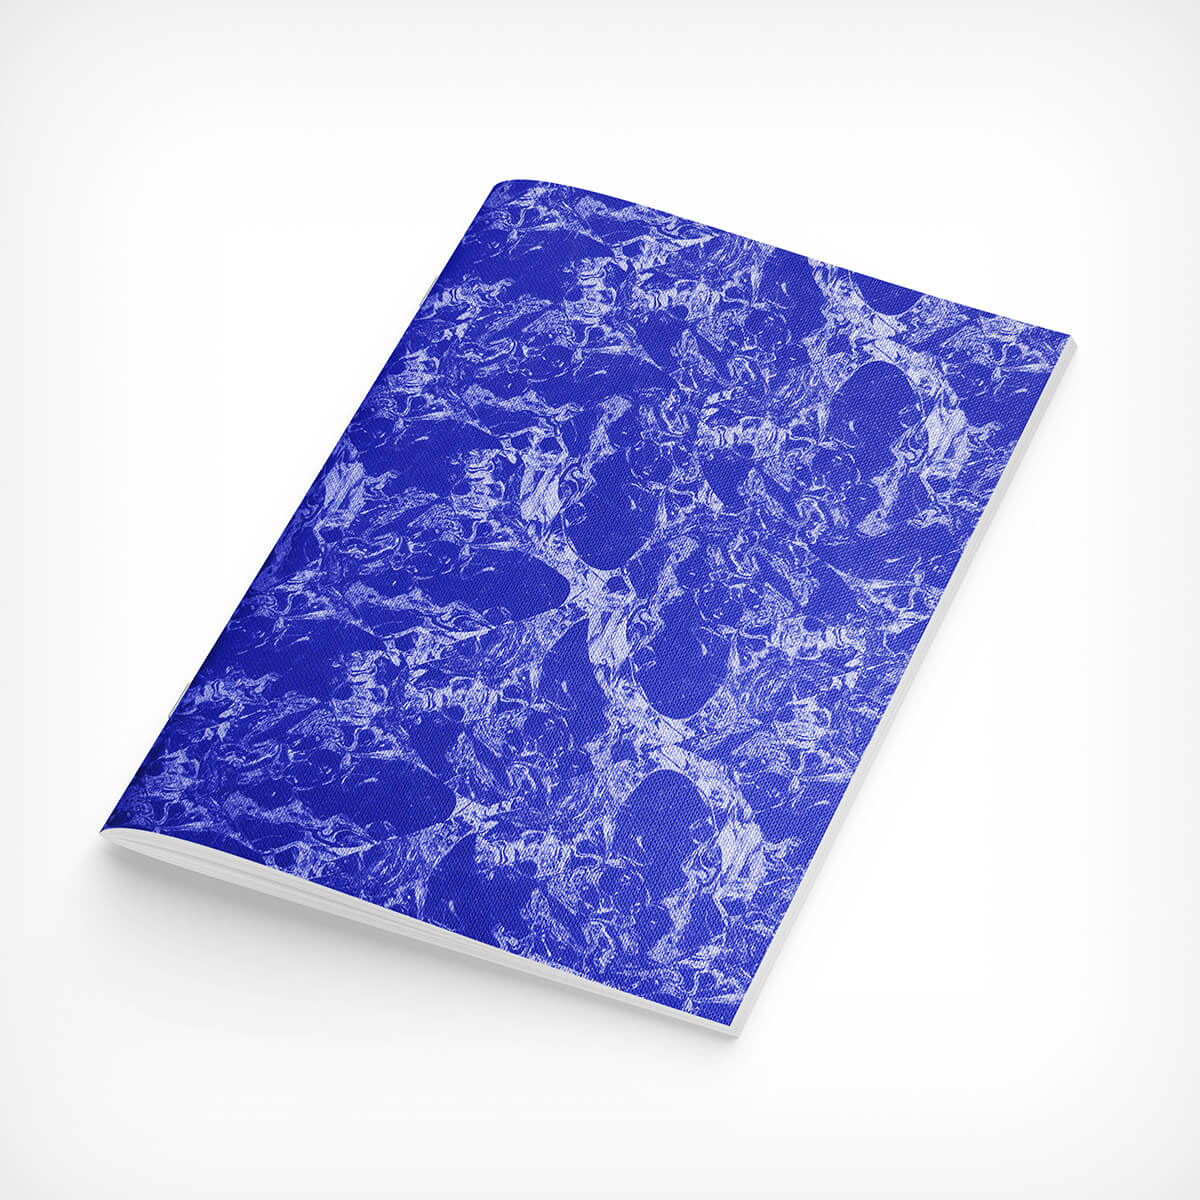 Notizbuch „Glacier Notebook No. 3 — royal blue“ Bienvenue Studios – diesellerie.com